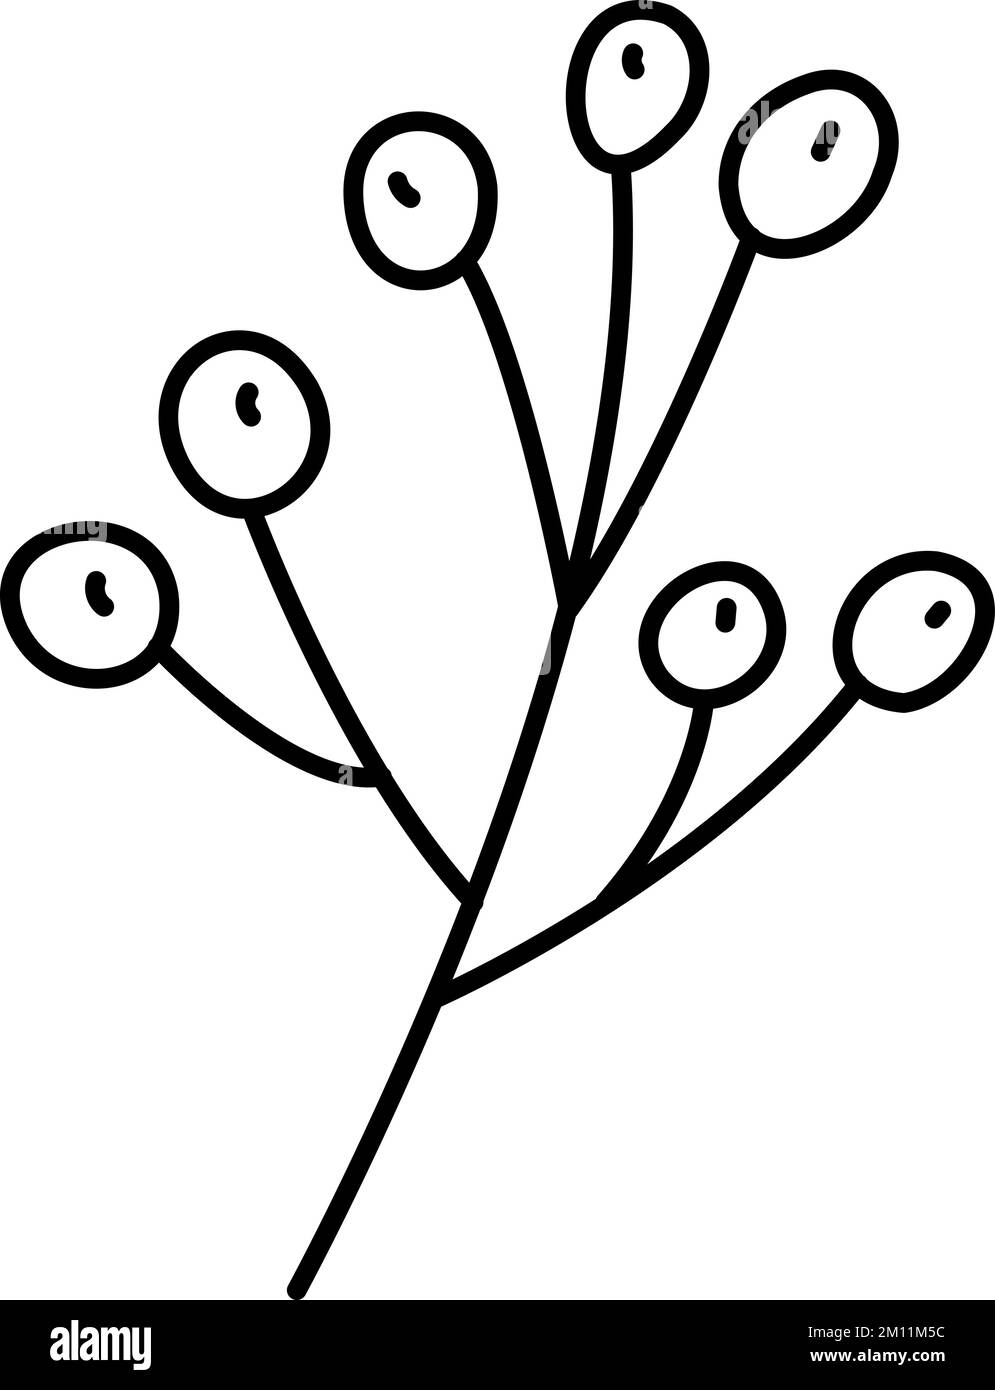 Frutti di bosco stilizzati Spring Vector con linee di monolina. Elemento grafico dell'illustrazione scandinavo. Immagine floreale estiva decorativa per il biglietto di auguri di San Valentino Illustrazione Vettoriale